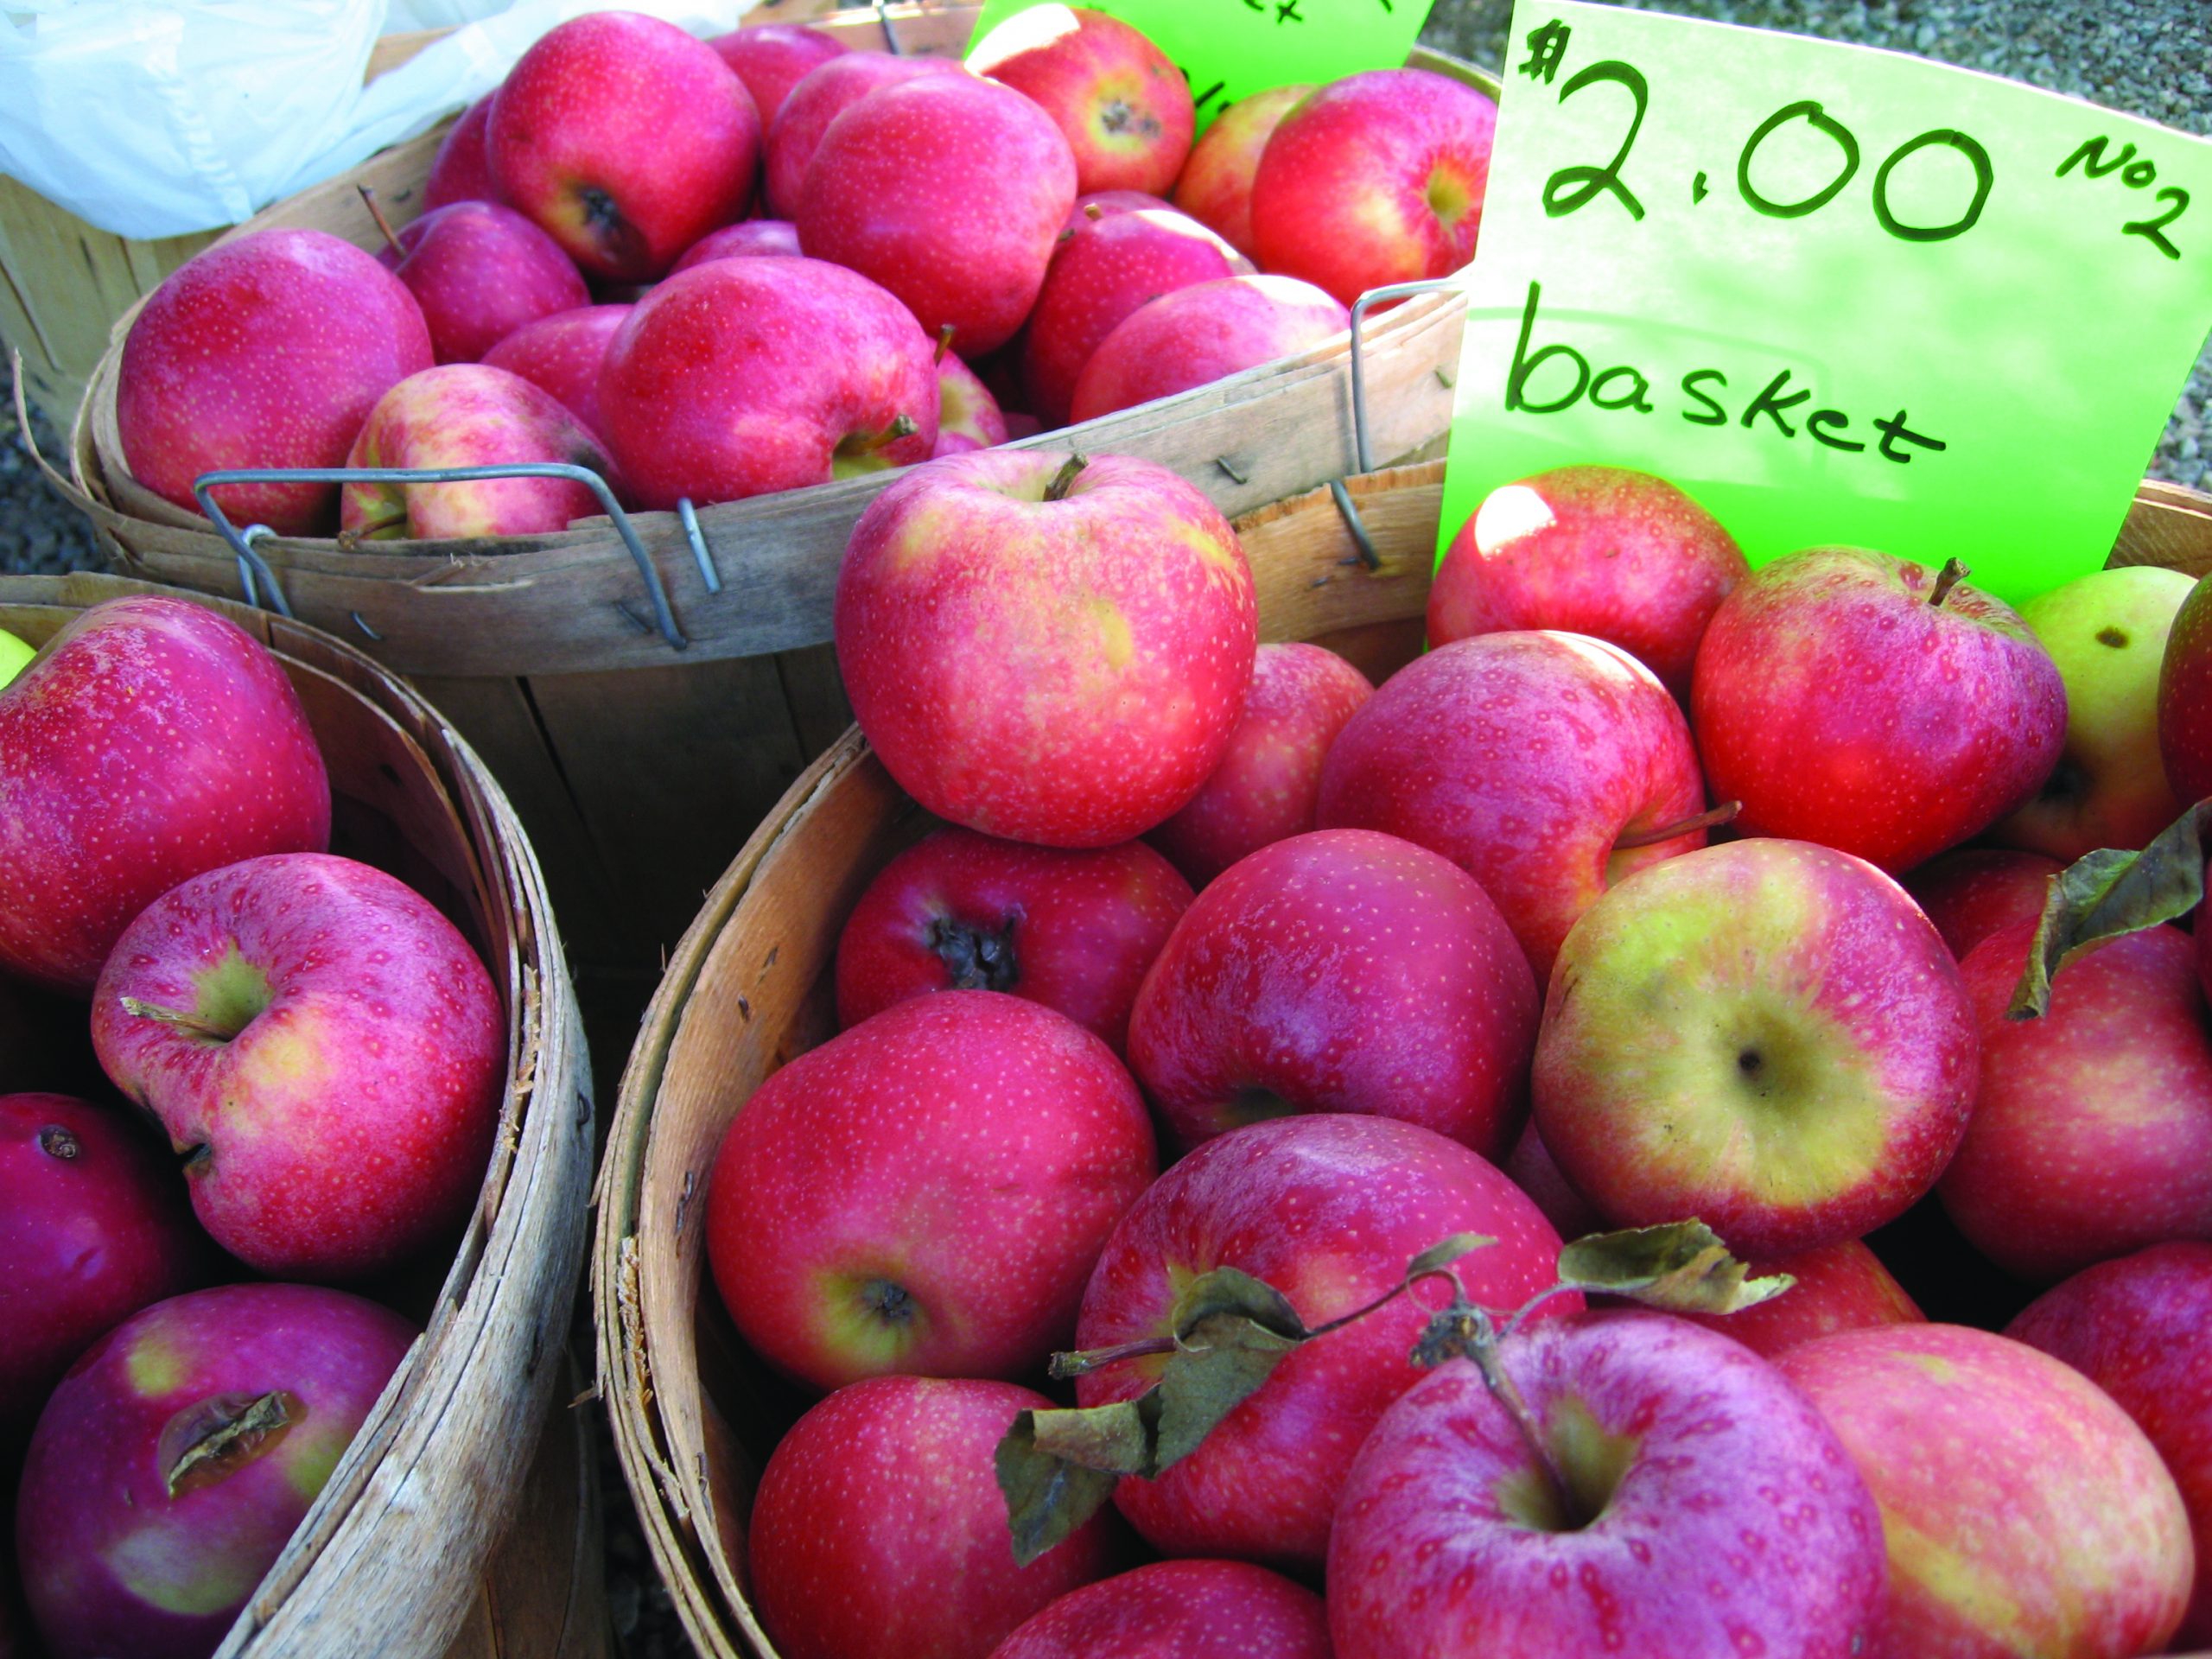 Basket of apples for sale